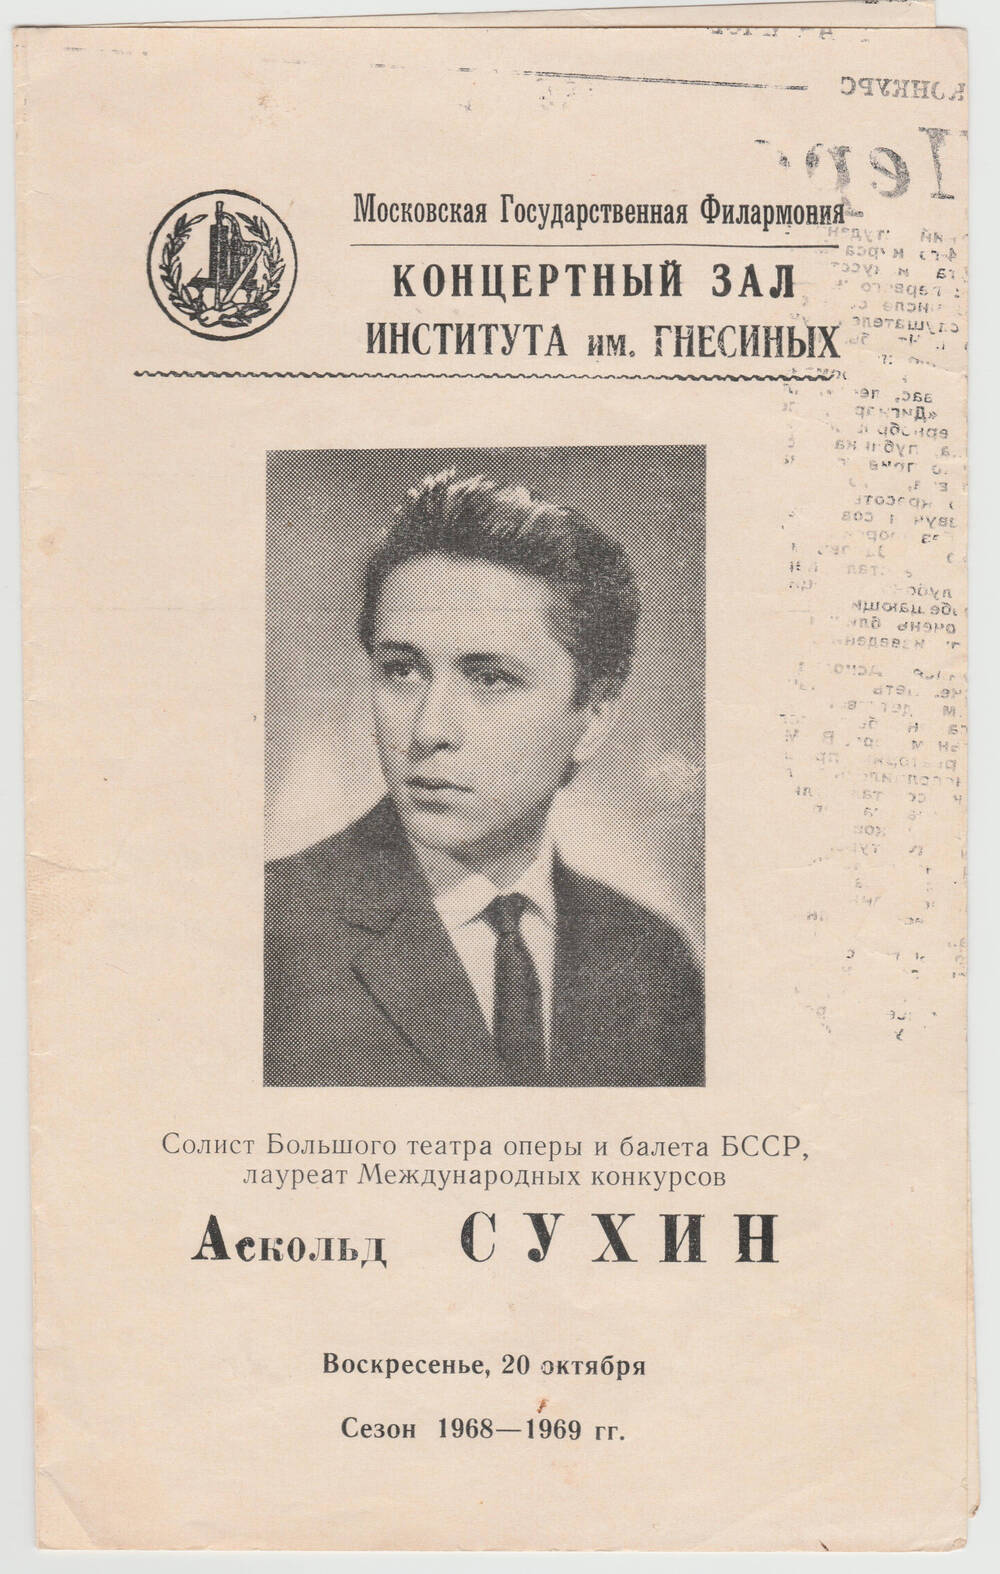 Программа концерта А.Сухина в Московской государственной филармонии сезона 1968-1969 гг. Москва. 20 октября 1968 г.